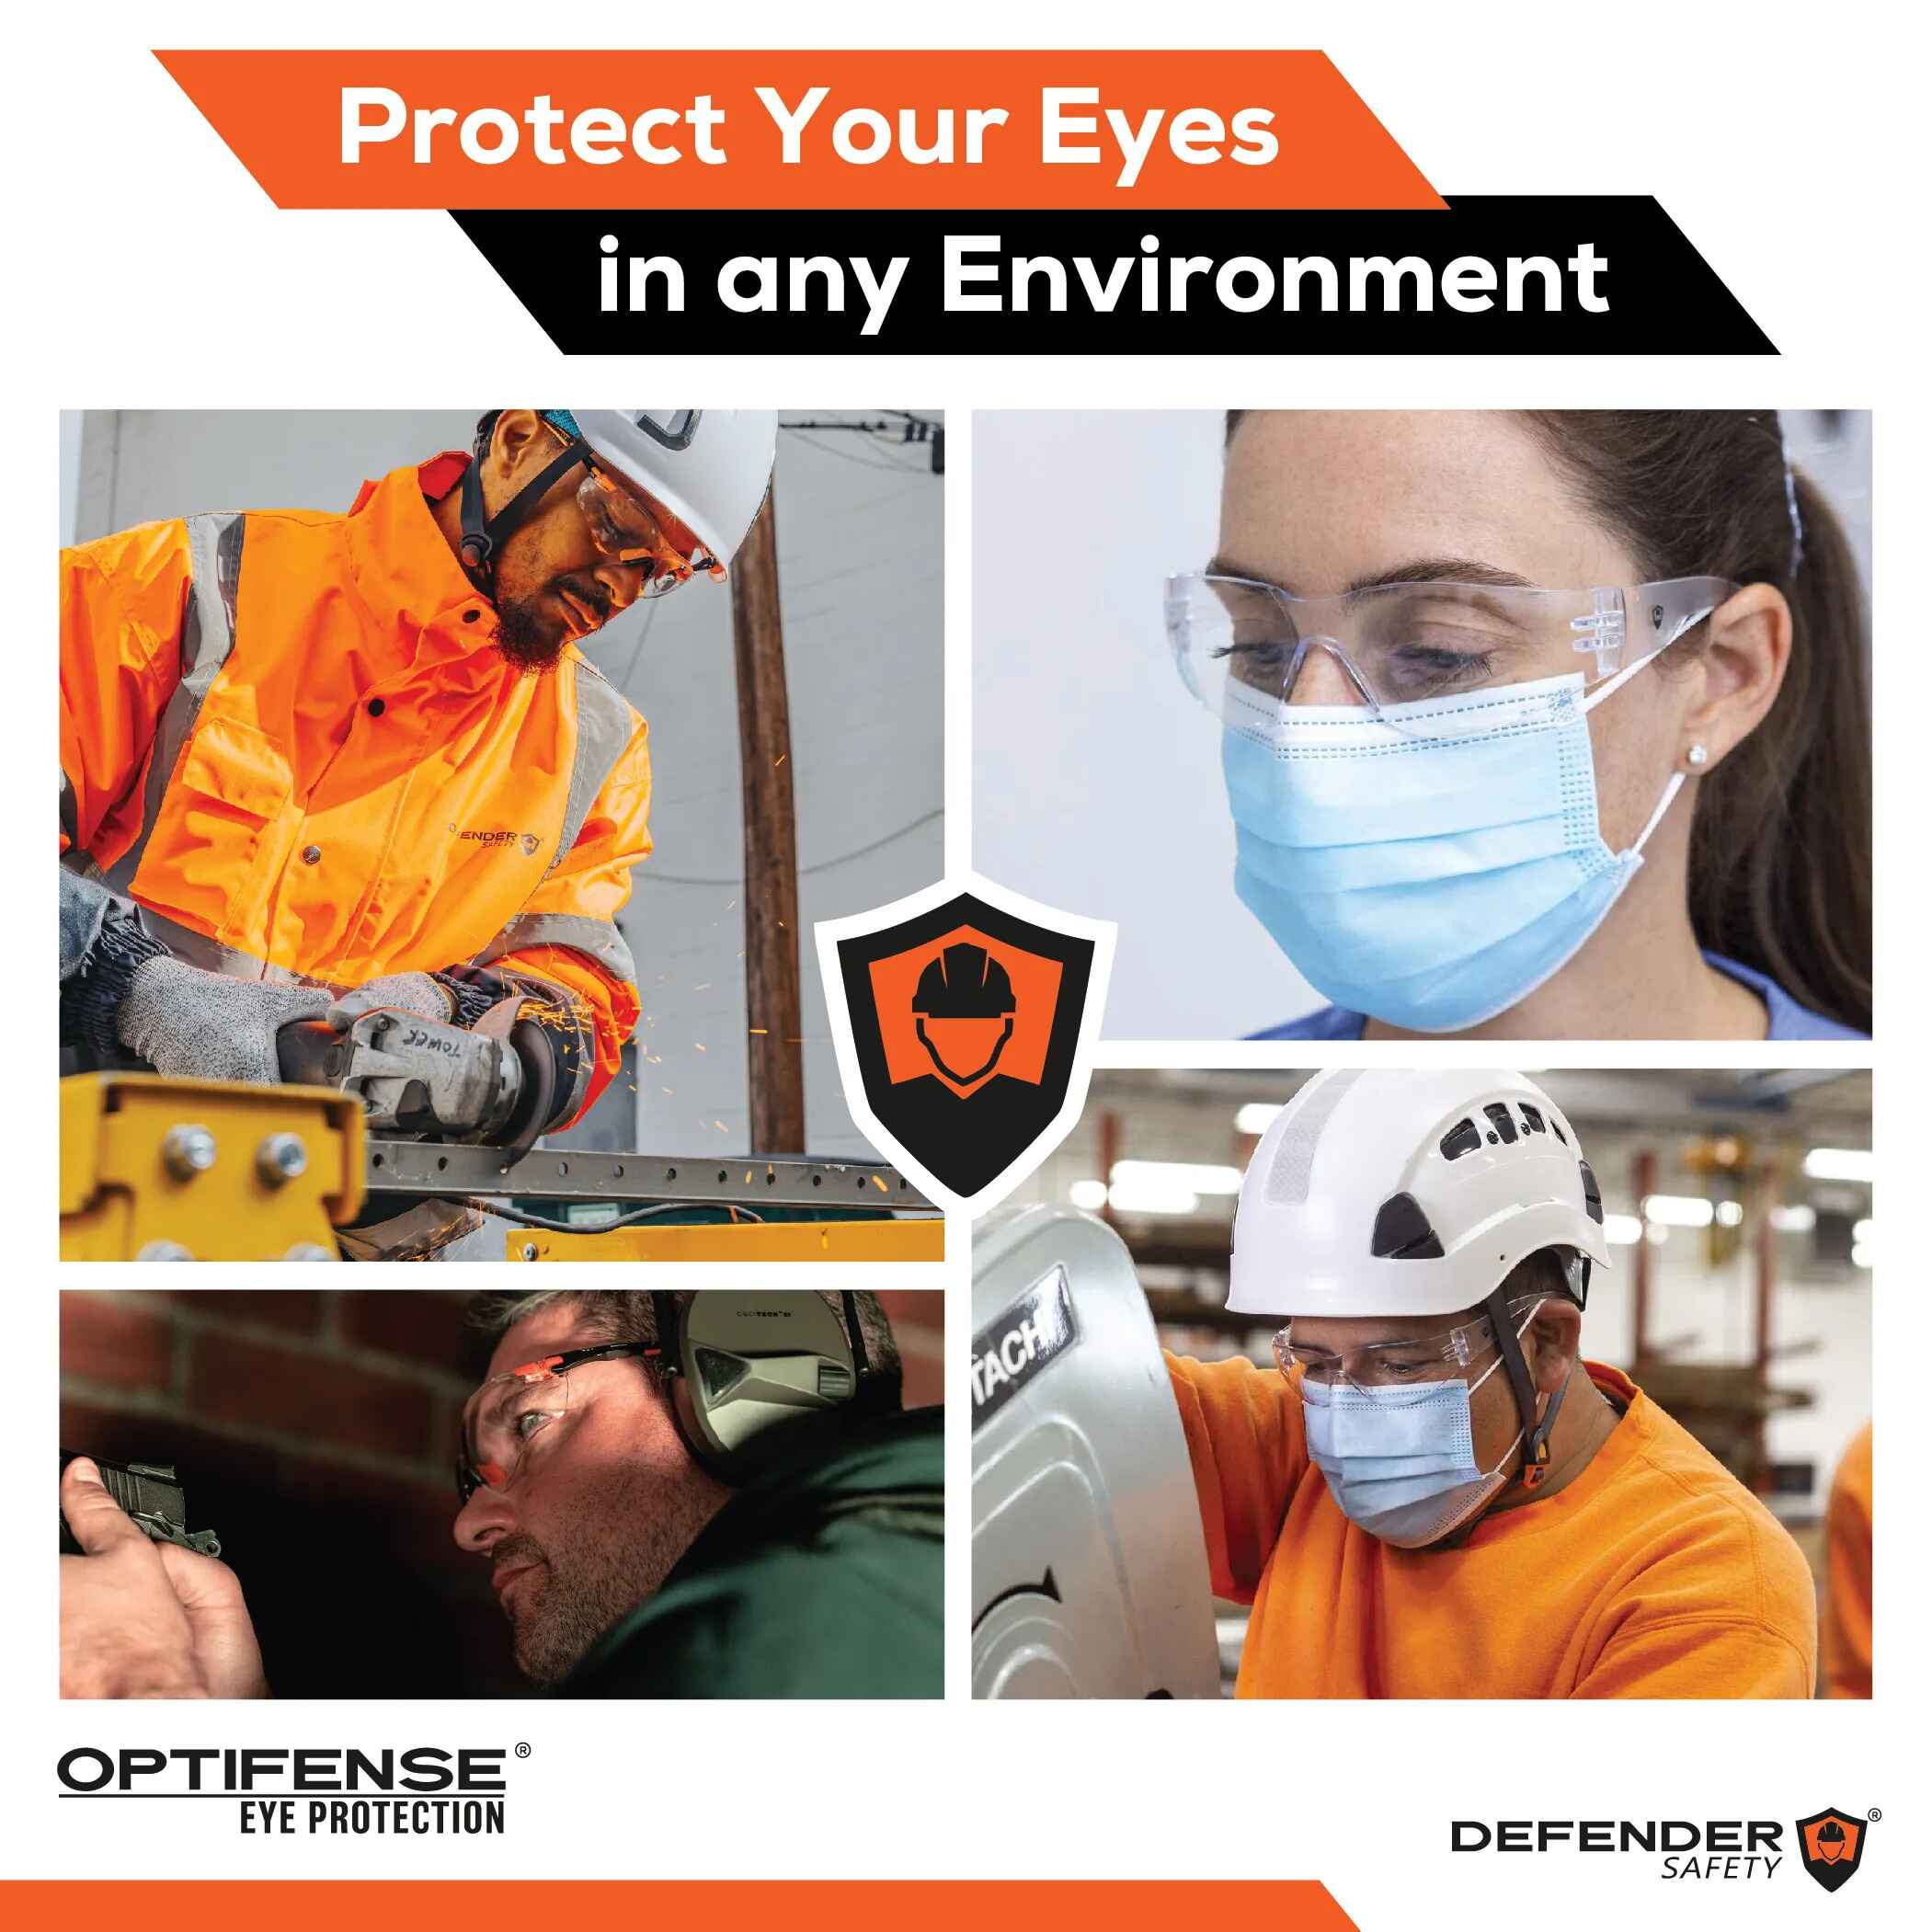 OPTIFENSE™ VS3 Anti Fog, Premium SMOKED Safety Glasses, ANSI Z87+ - Defender Safety